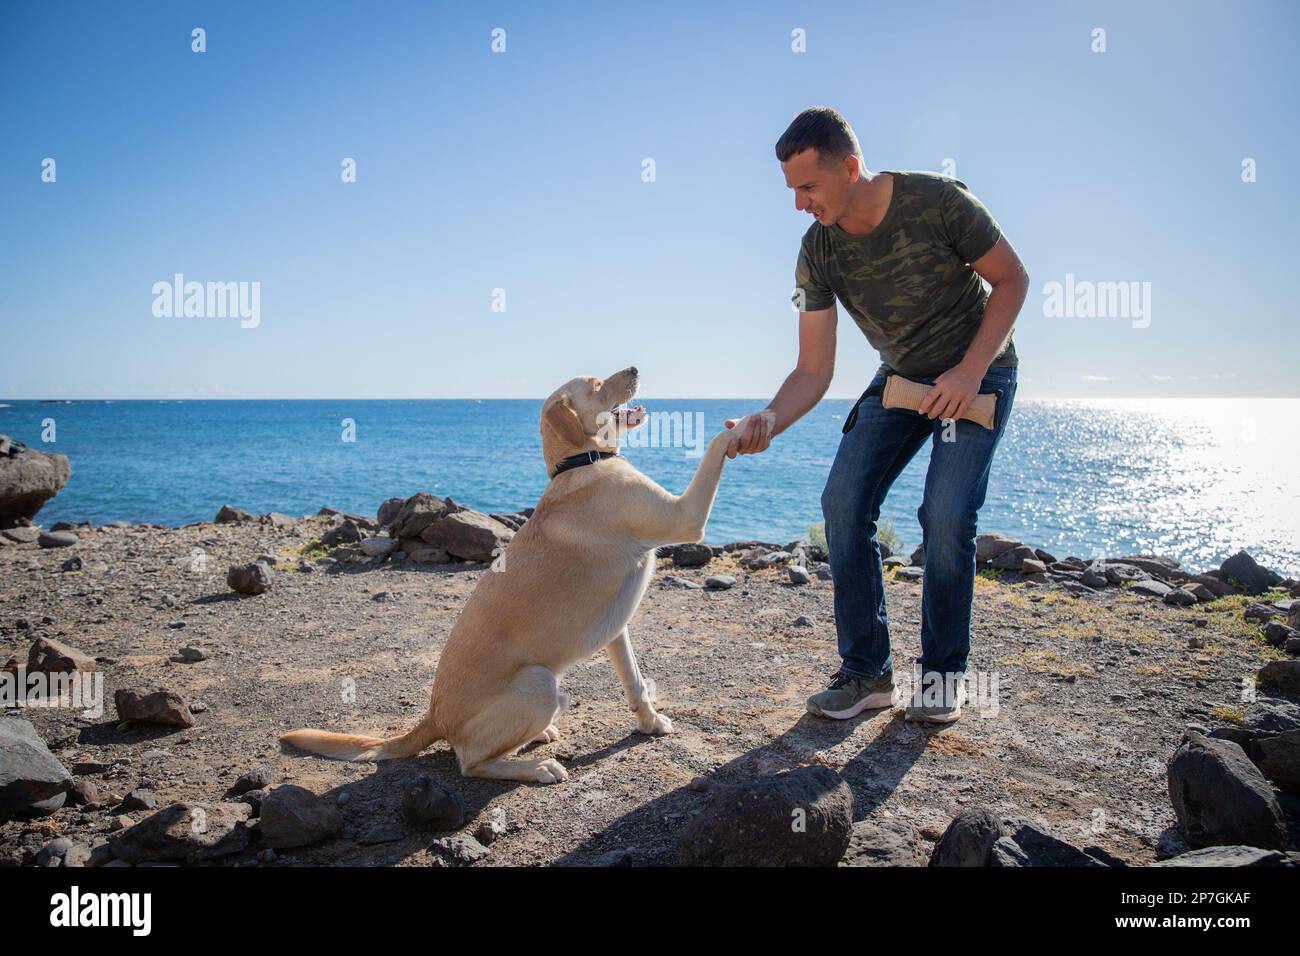 Un addestratore del cane con un cane sulla spiaggia fa gli esercizi di addestramento e tiene la sua zampa. Foto Stock